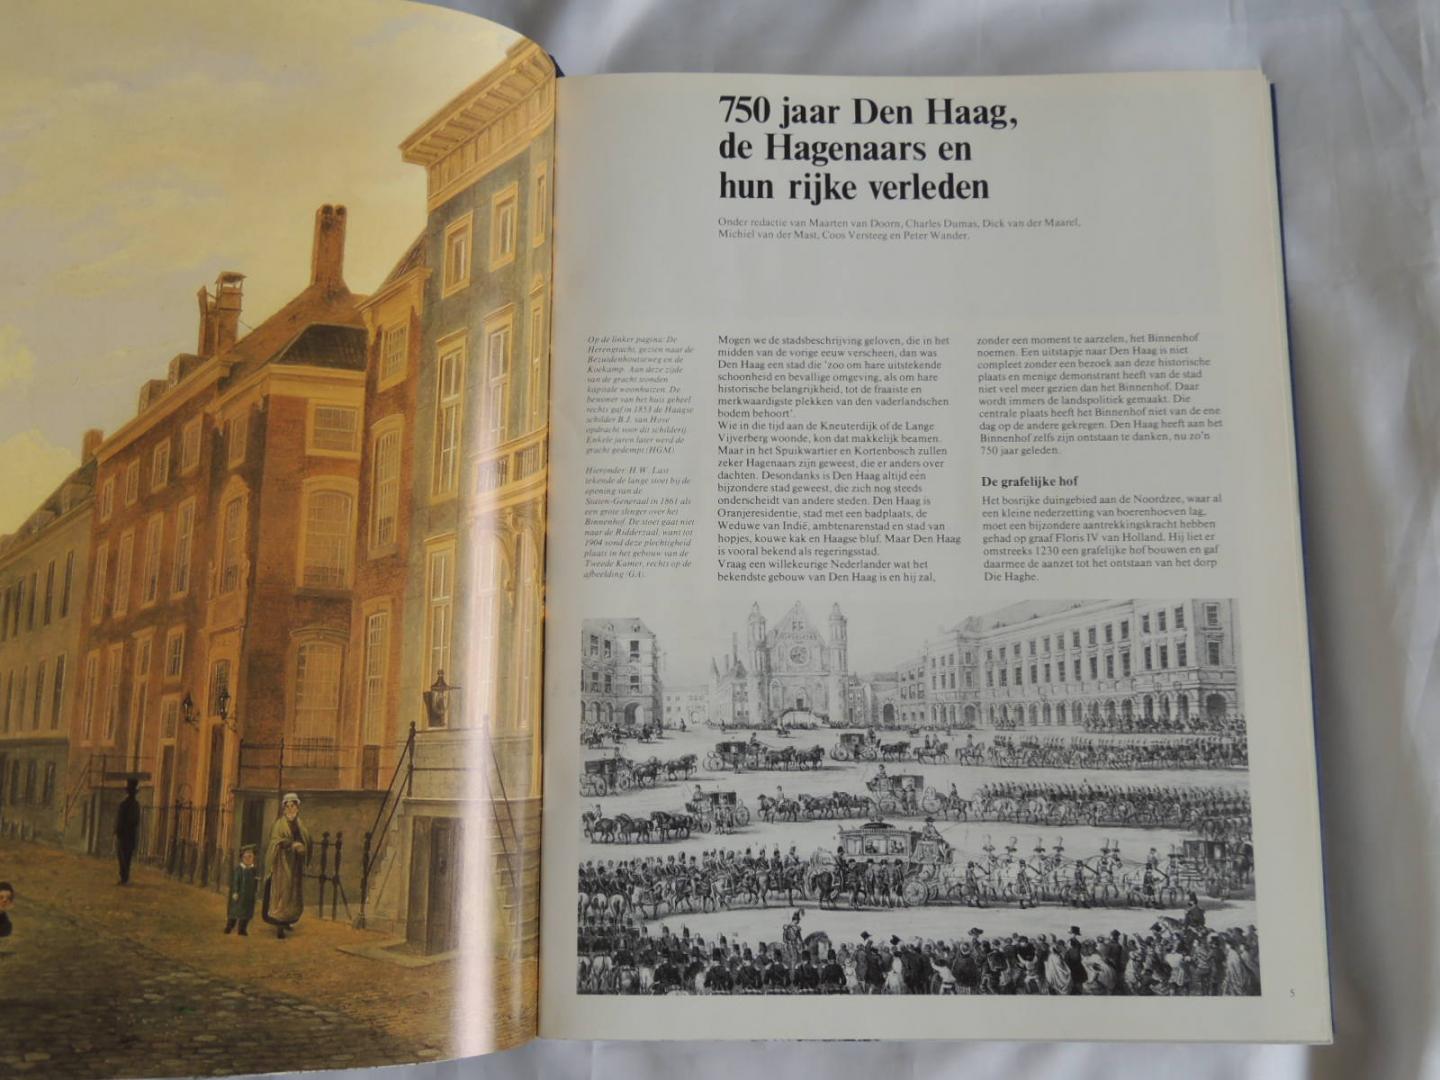 schols - Ach lieve tijd  750 jaar Den Haag en de Hagenaars -  15 delen compleet in bijbehorende opberg cassette